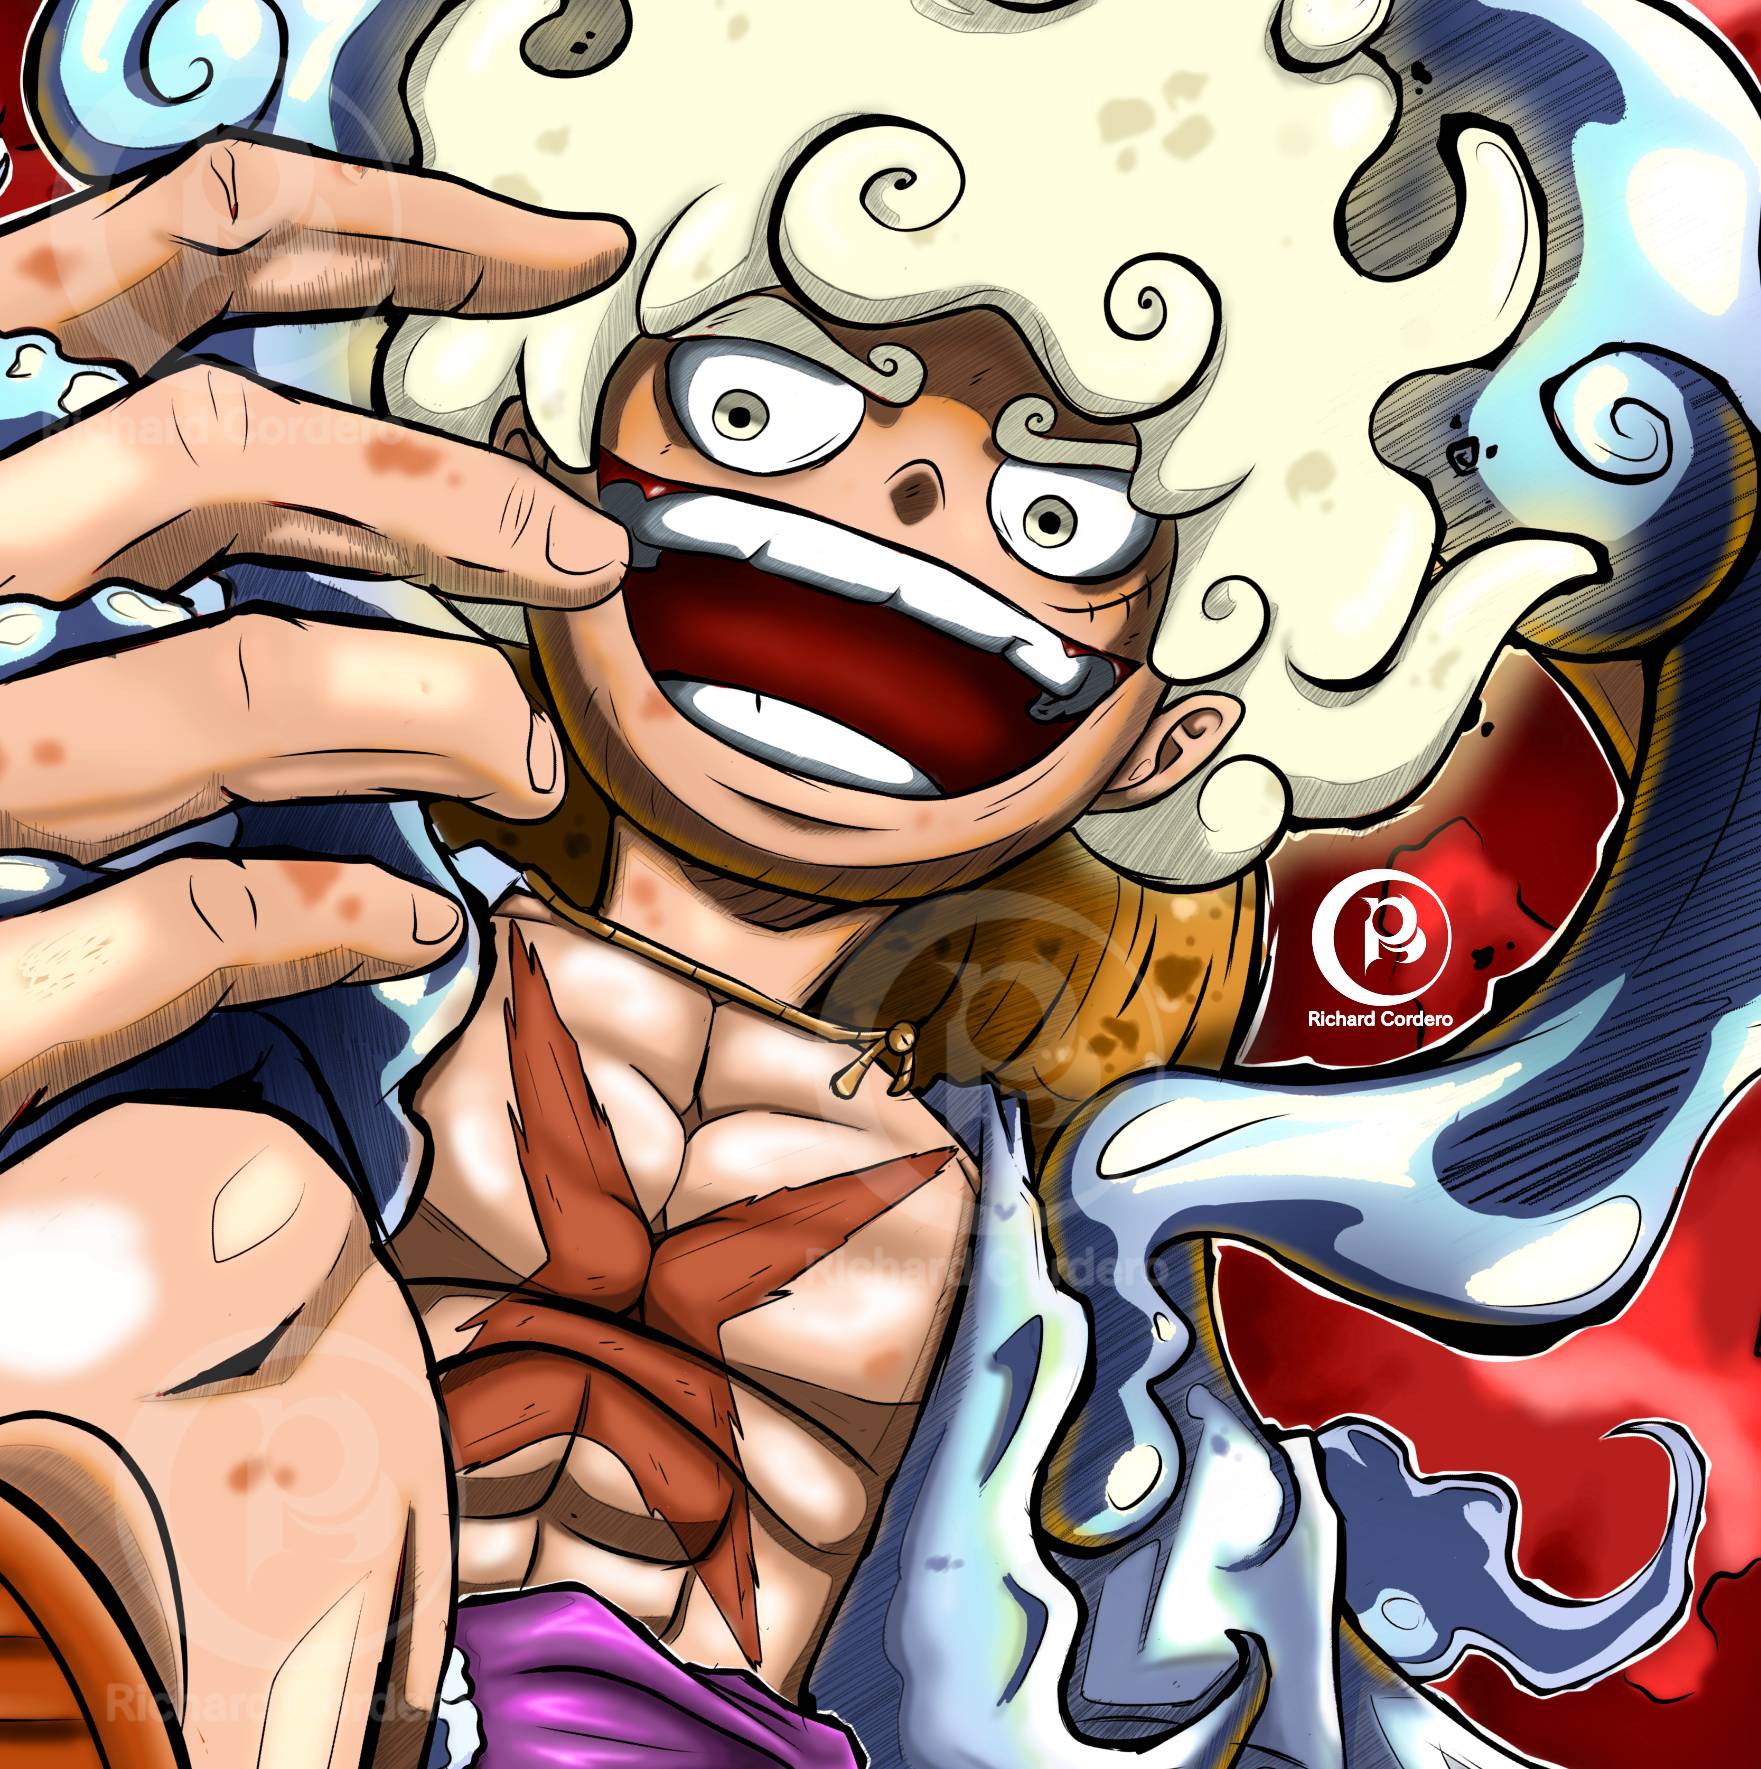 Monkey D. Luffy (Gear 5)  One Piece by B-a-i-o-r-e-t-t-o on DeviantArt